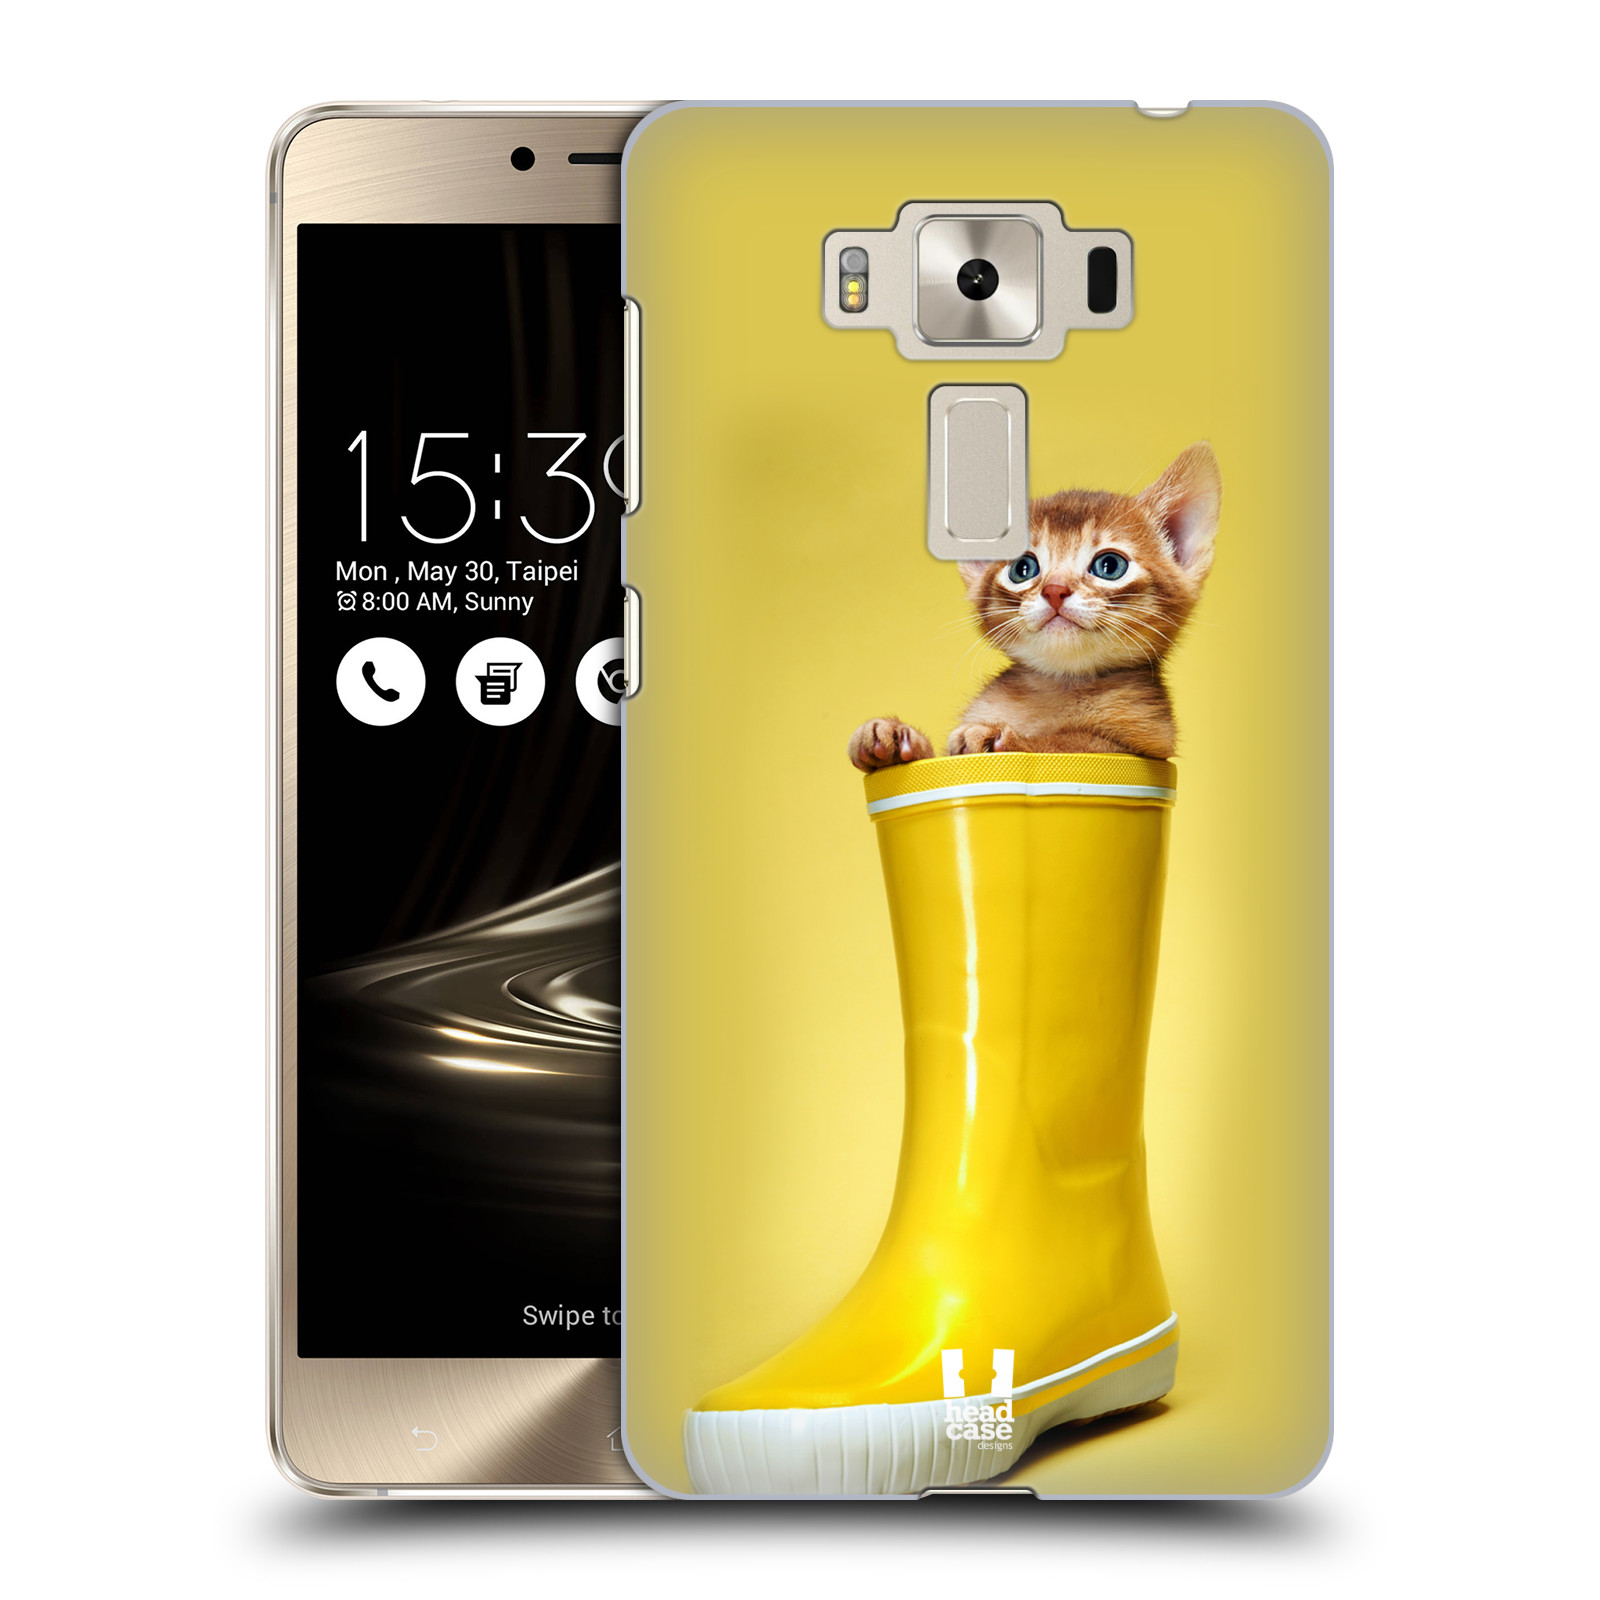 HEAD CASE plastový obal na mobil Asus Zenfone 3 DELUXE ZS550KL vzor Legrační zvířátka kotě v botě žlutá